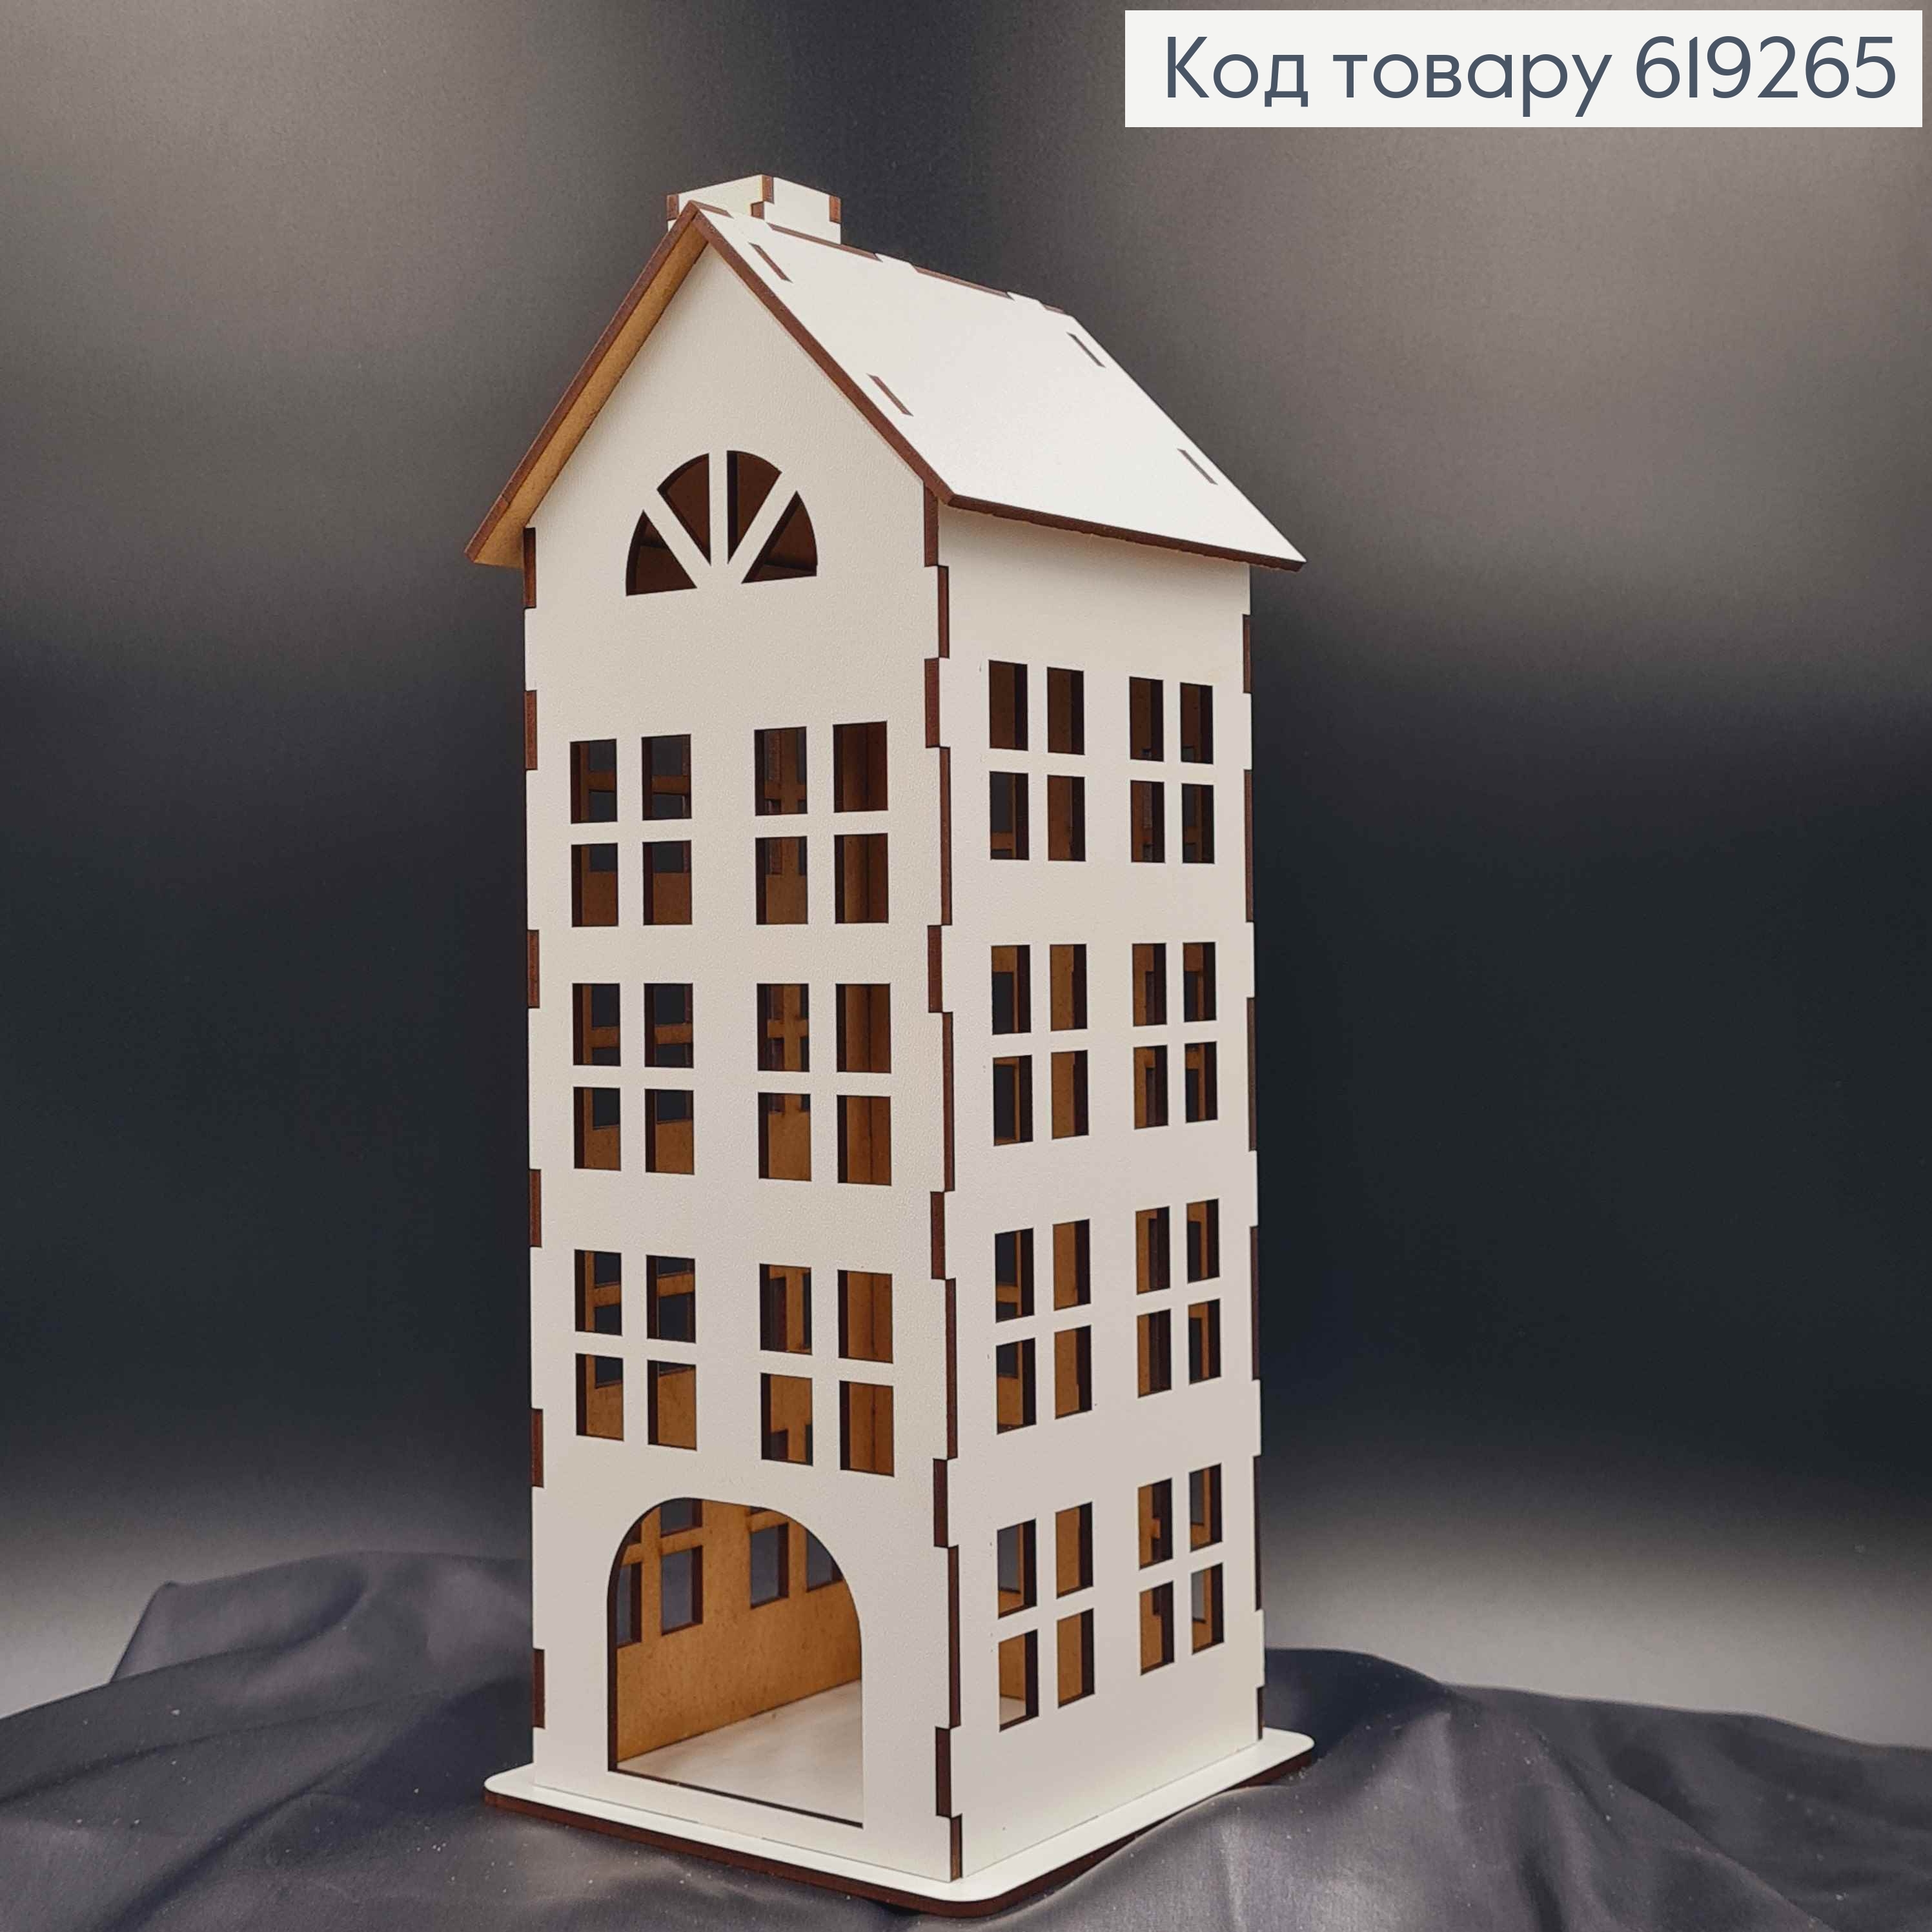 Підсвічник, дерев'яний білий будиночок, багатоповерхівка, класичний, 30см, Україна 619265 фото 2